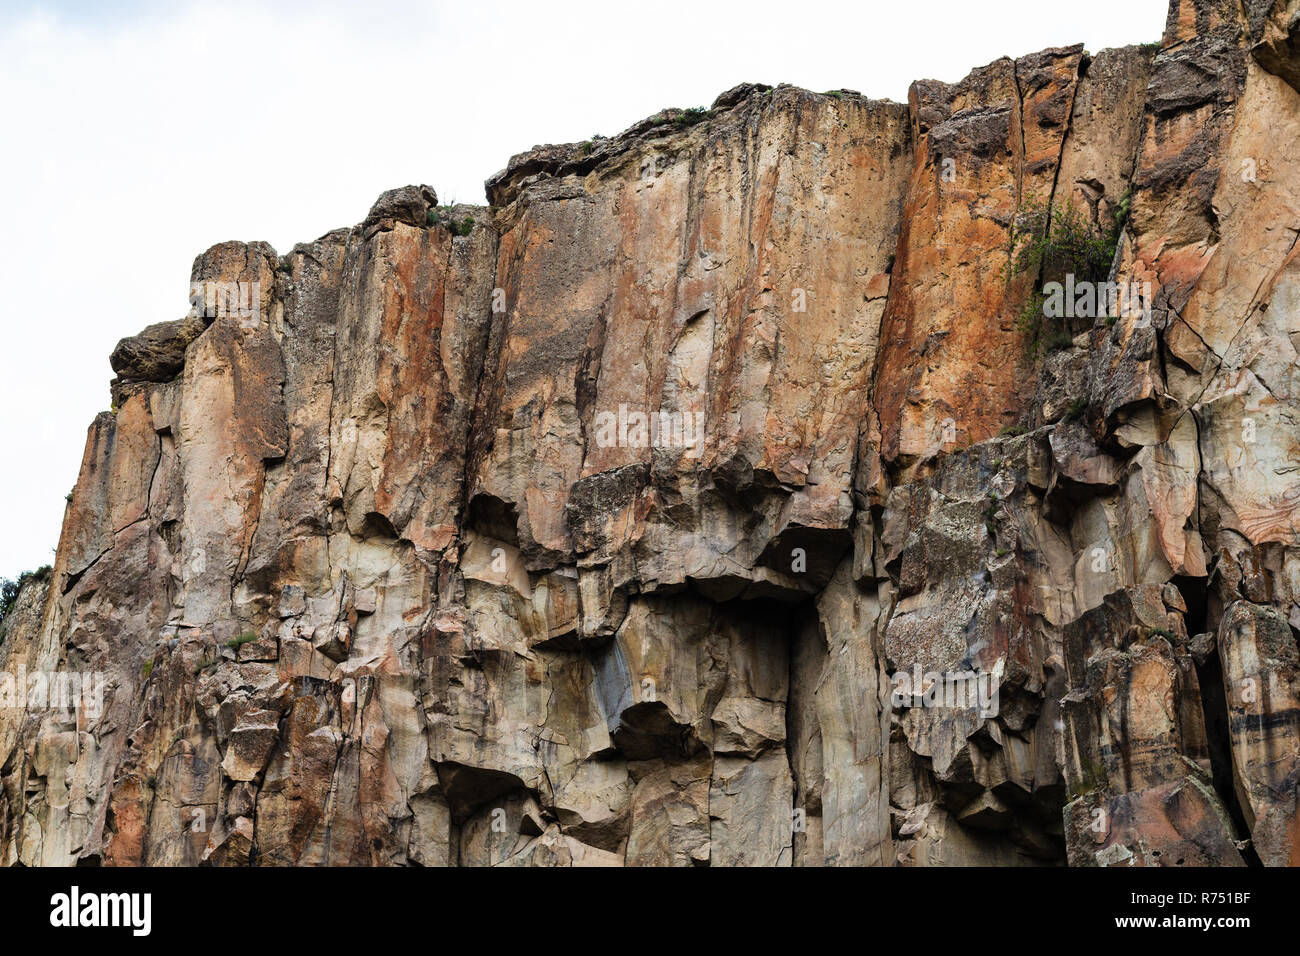 old volcanic rocks in Ihlara Gorge in Cappadocia Stock Photo